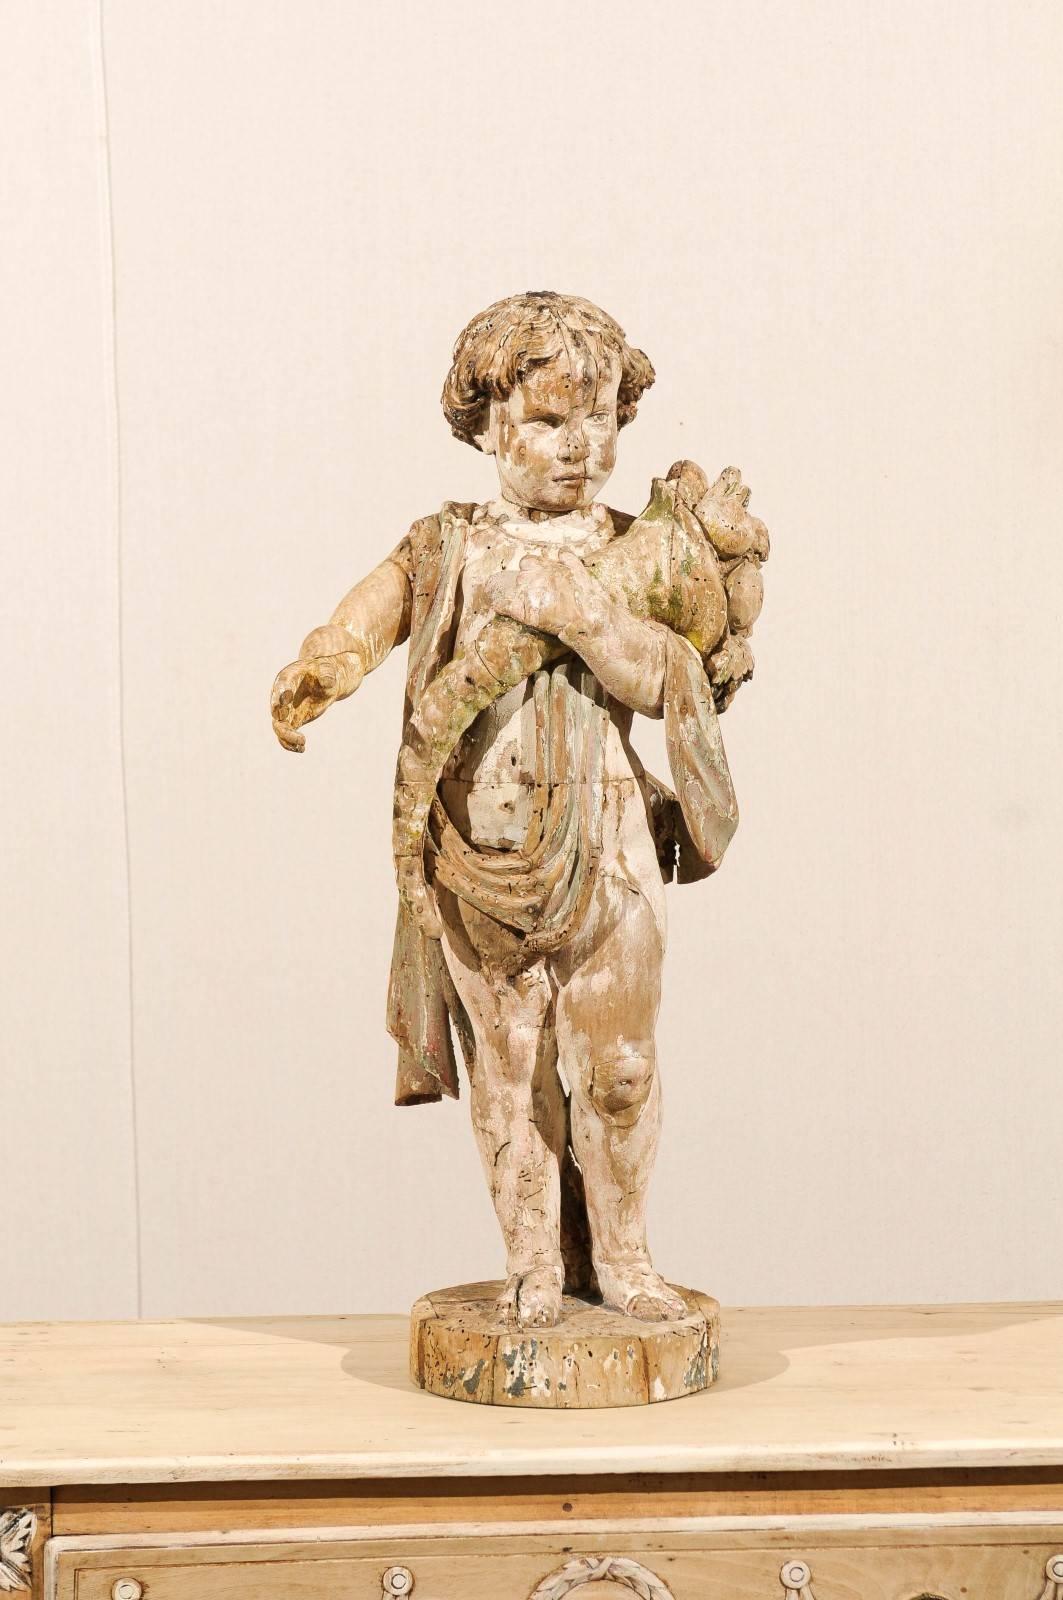 Carved Italian 18th Century Putto/Cherub Statue Holding a Cornucopia